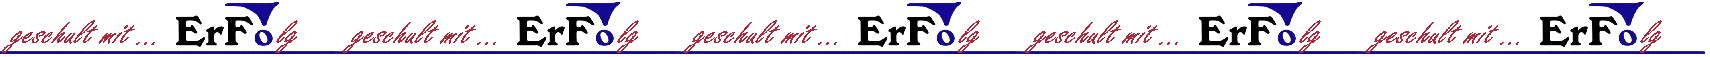 ErFo Logo